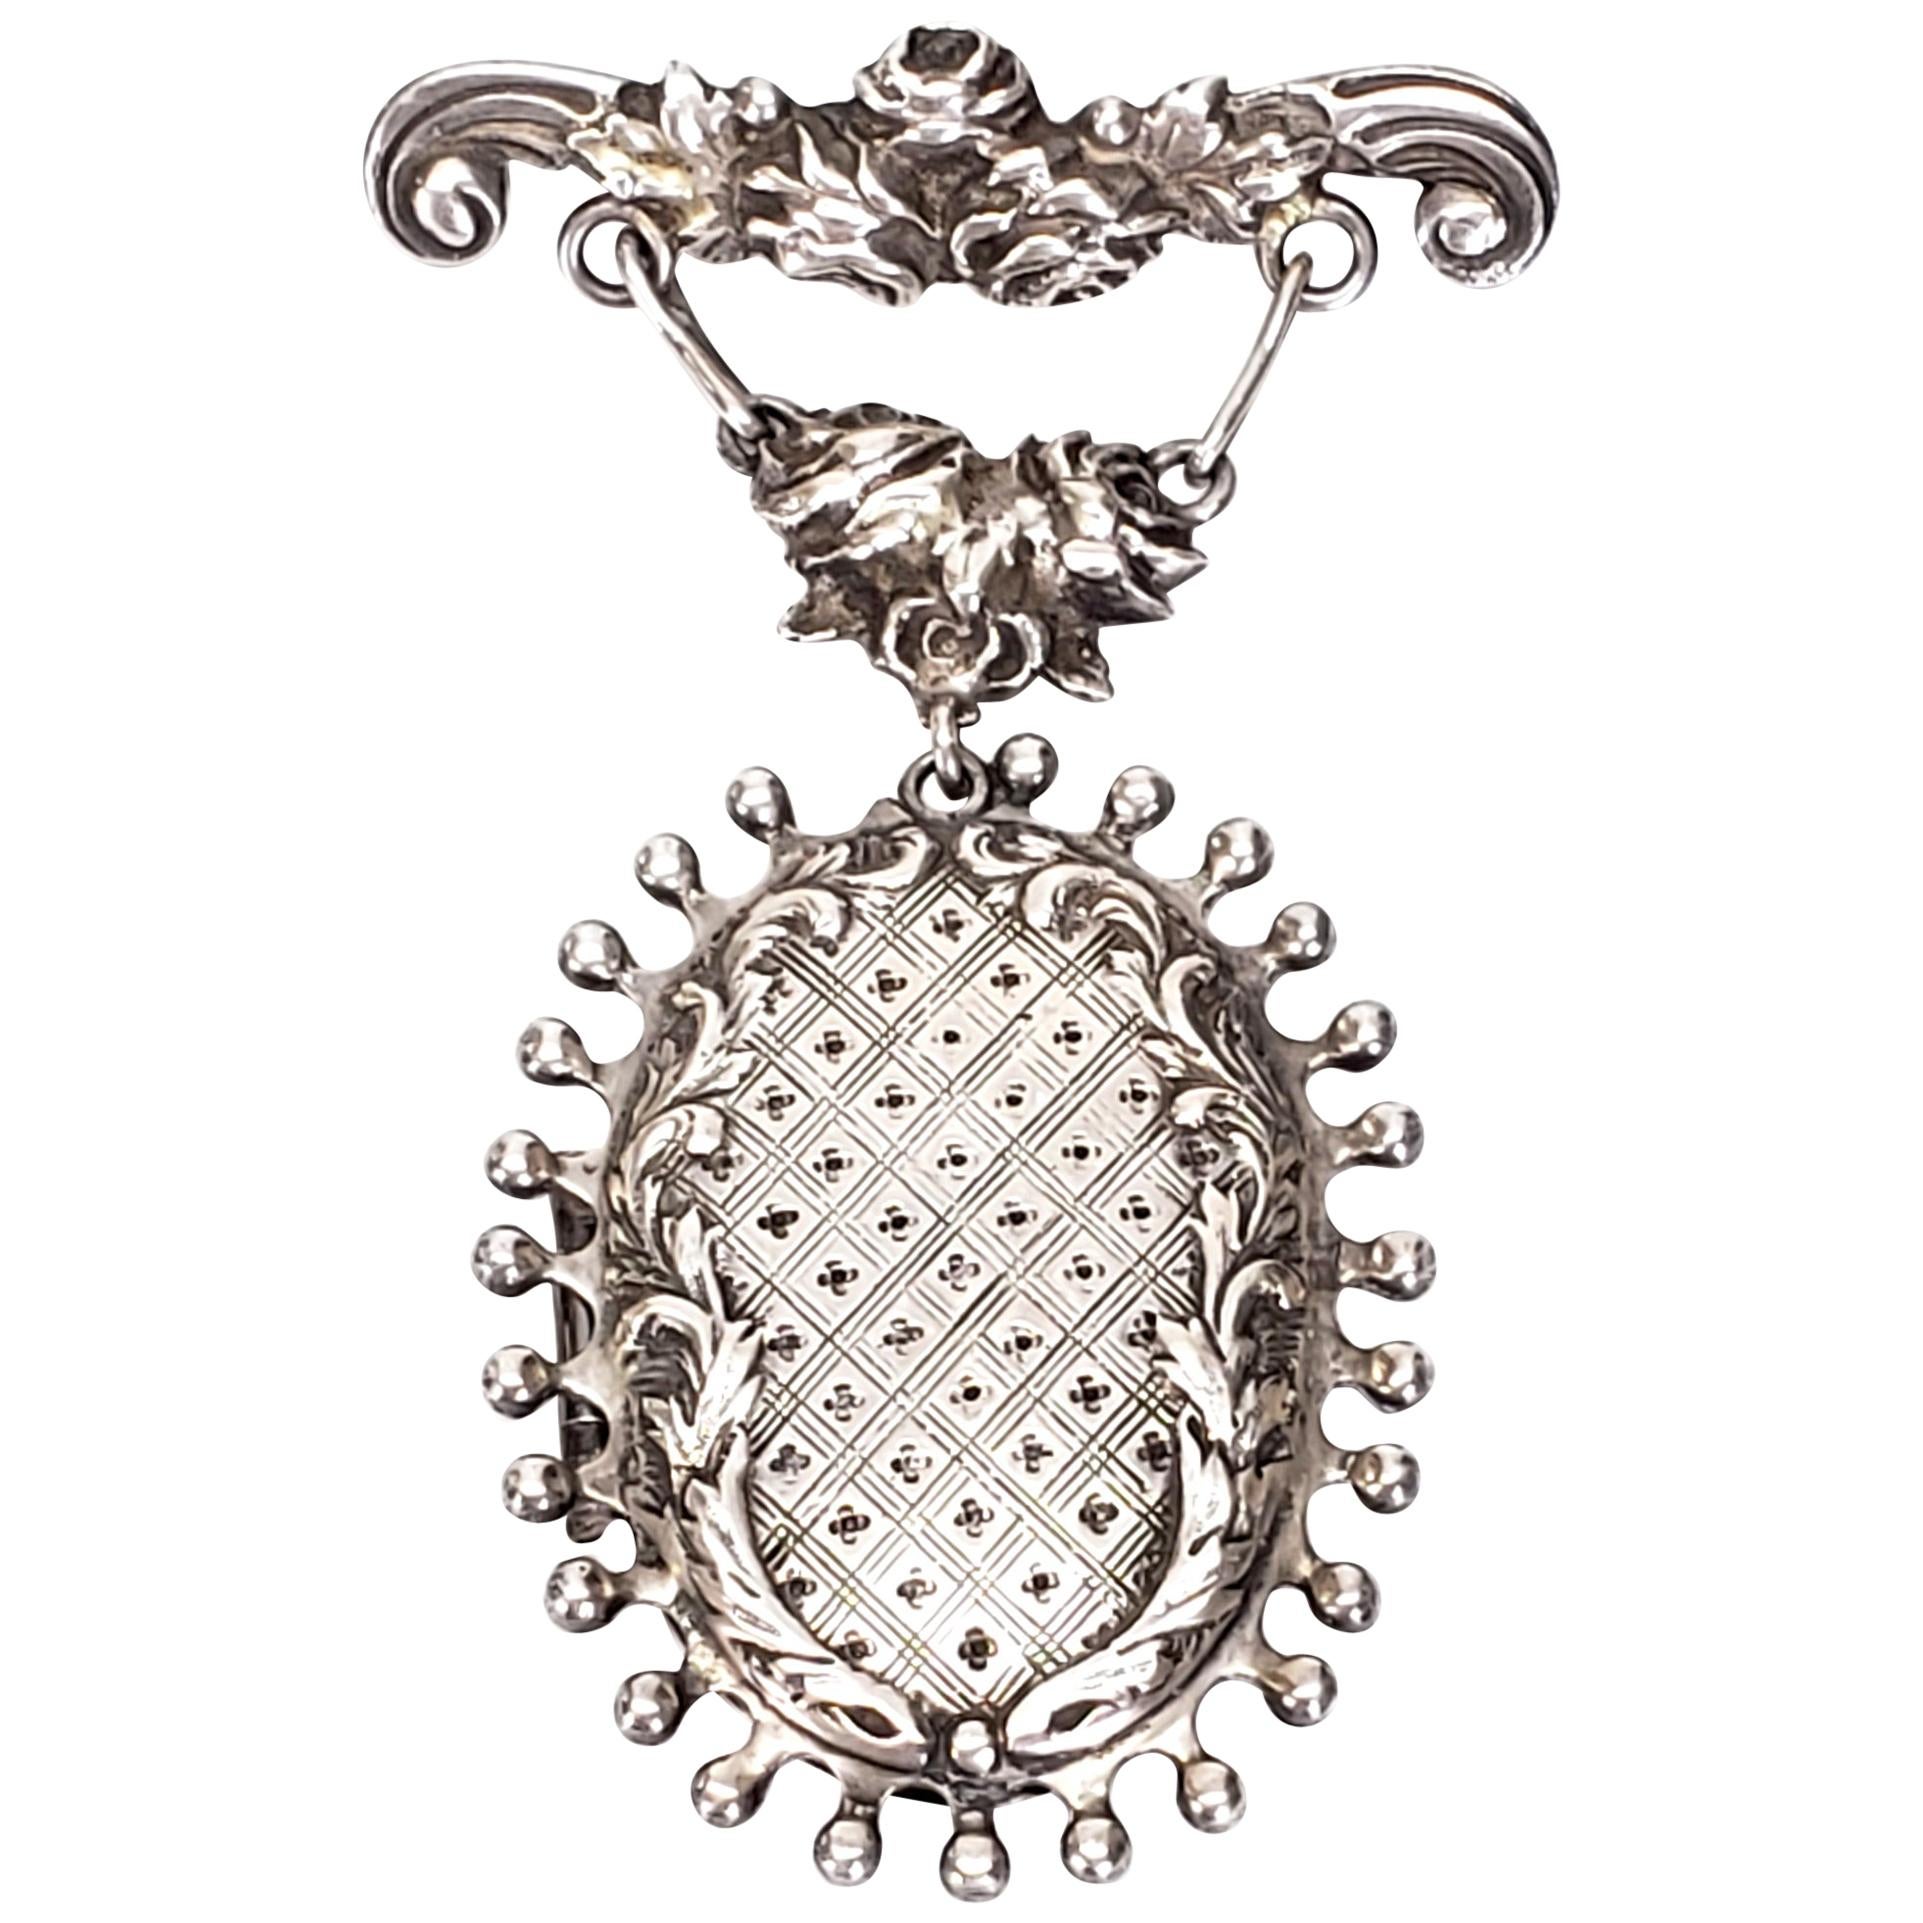 Handmade Sterling Silver Hanging Locket Pin / Brooch